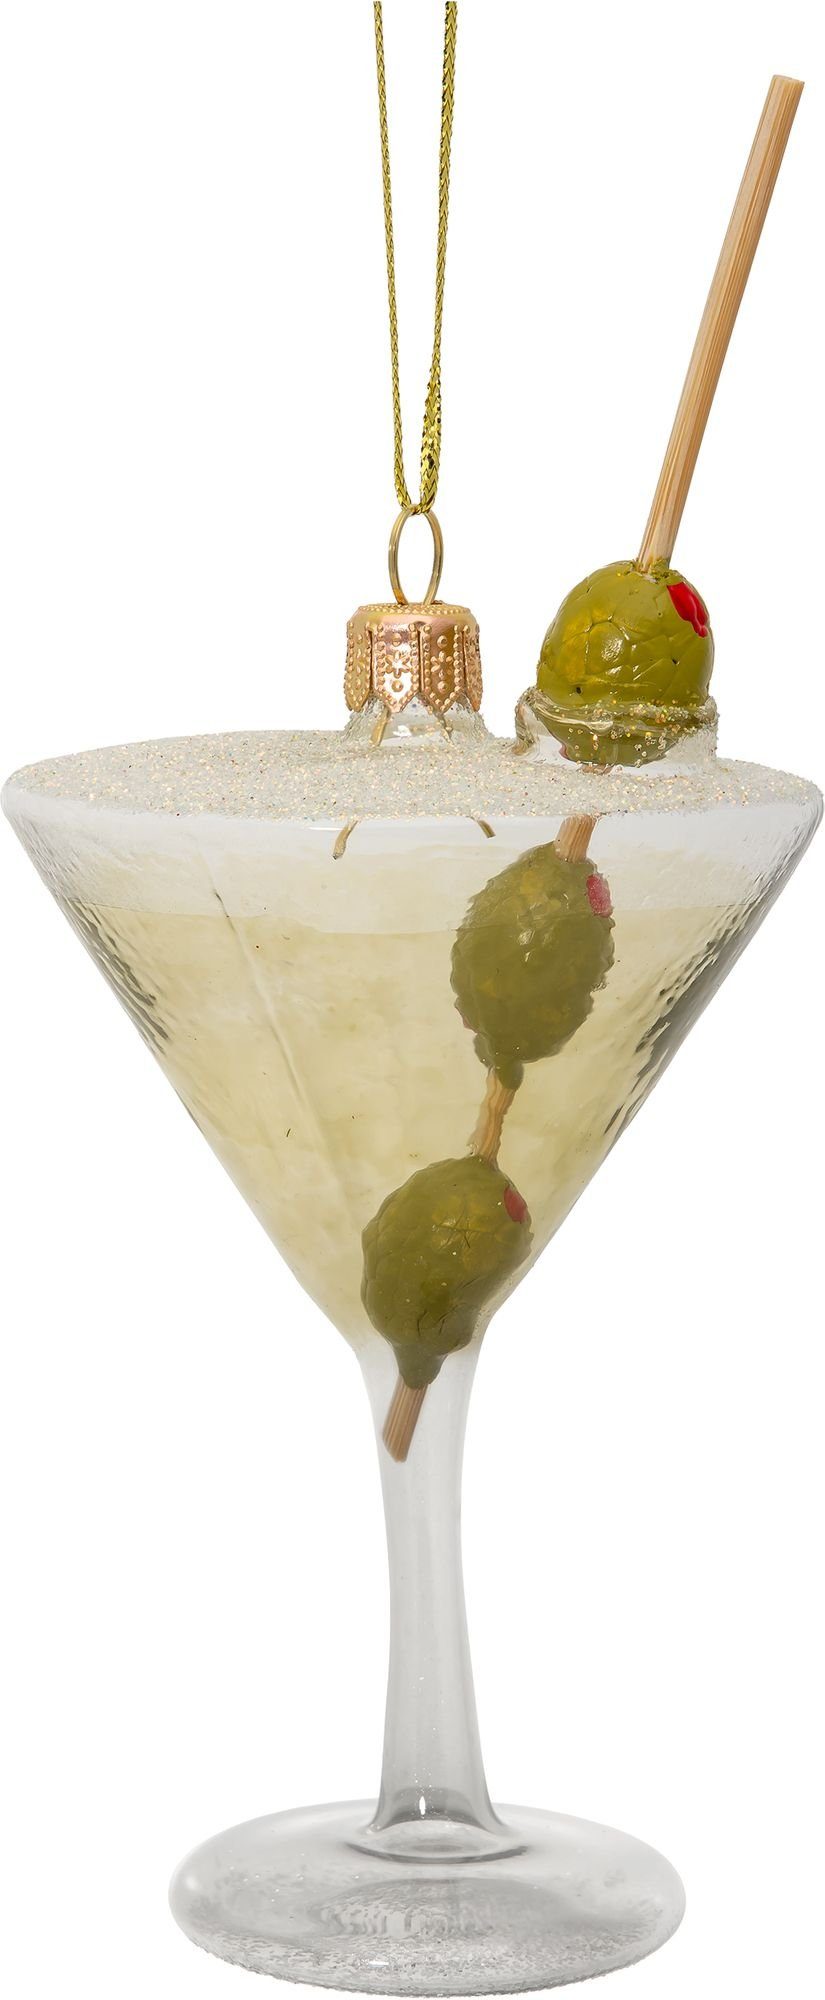 SIKORA Christbaumschmuck BS752 Cocktail mit Oliven Glas Figur Weihnachtsbaum Anhänger - Premium Line